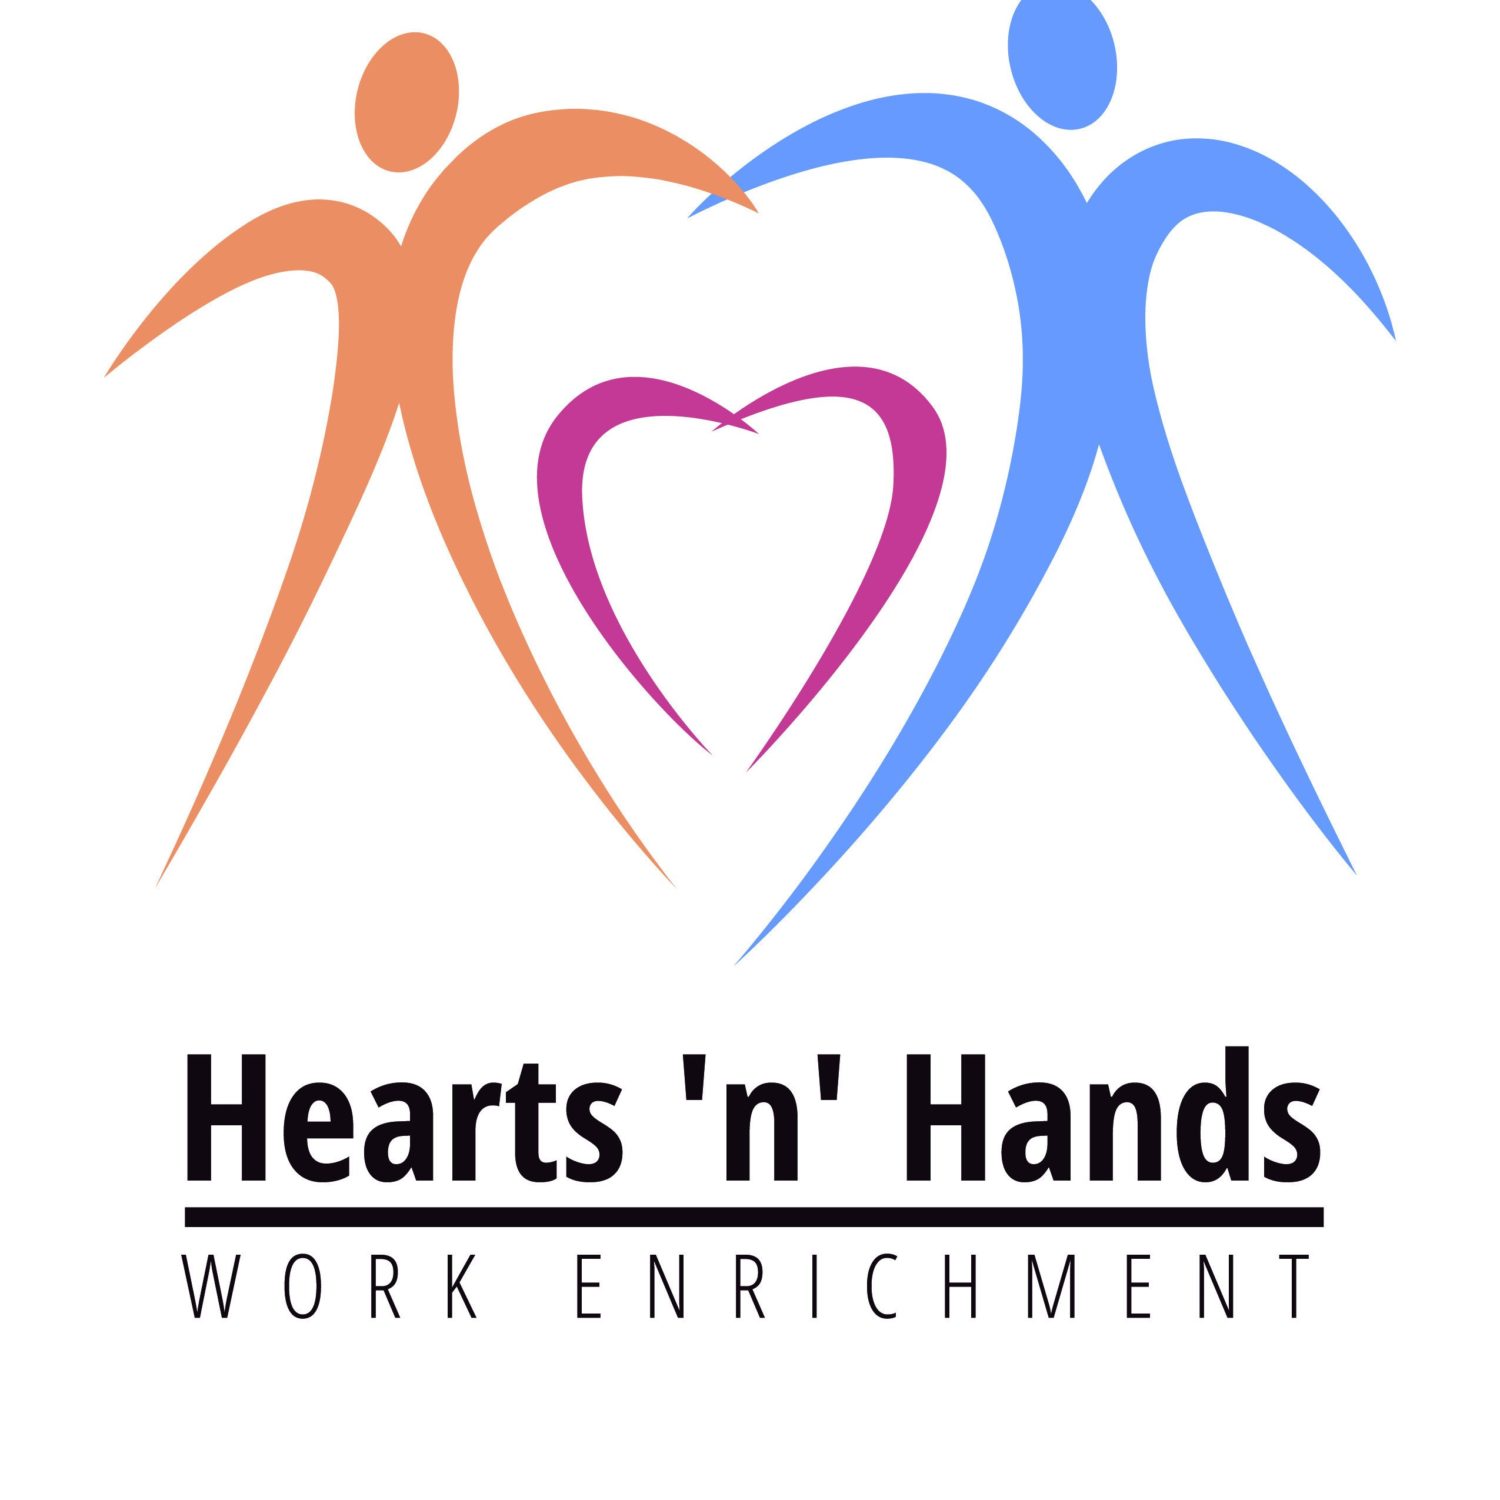 heartsnhands social enterprise